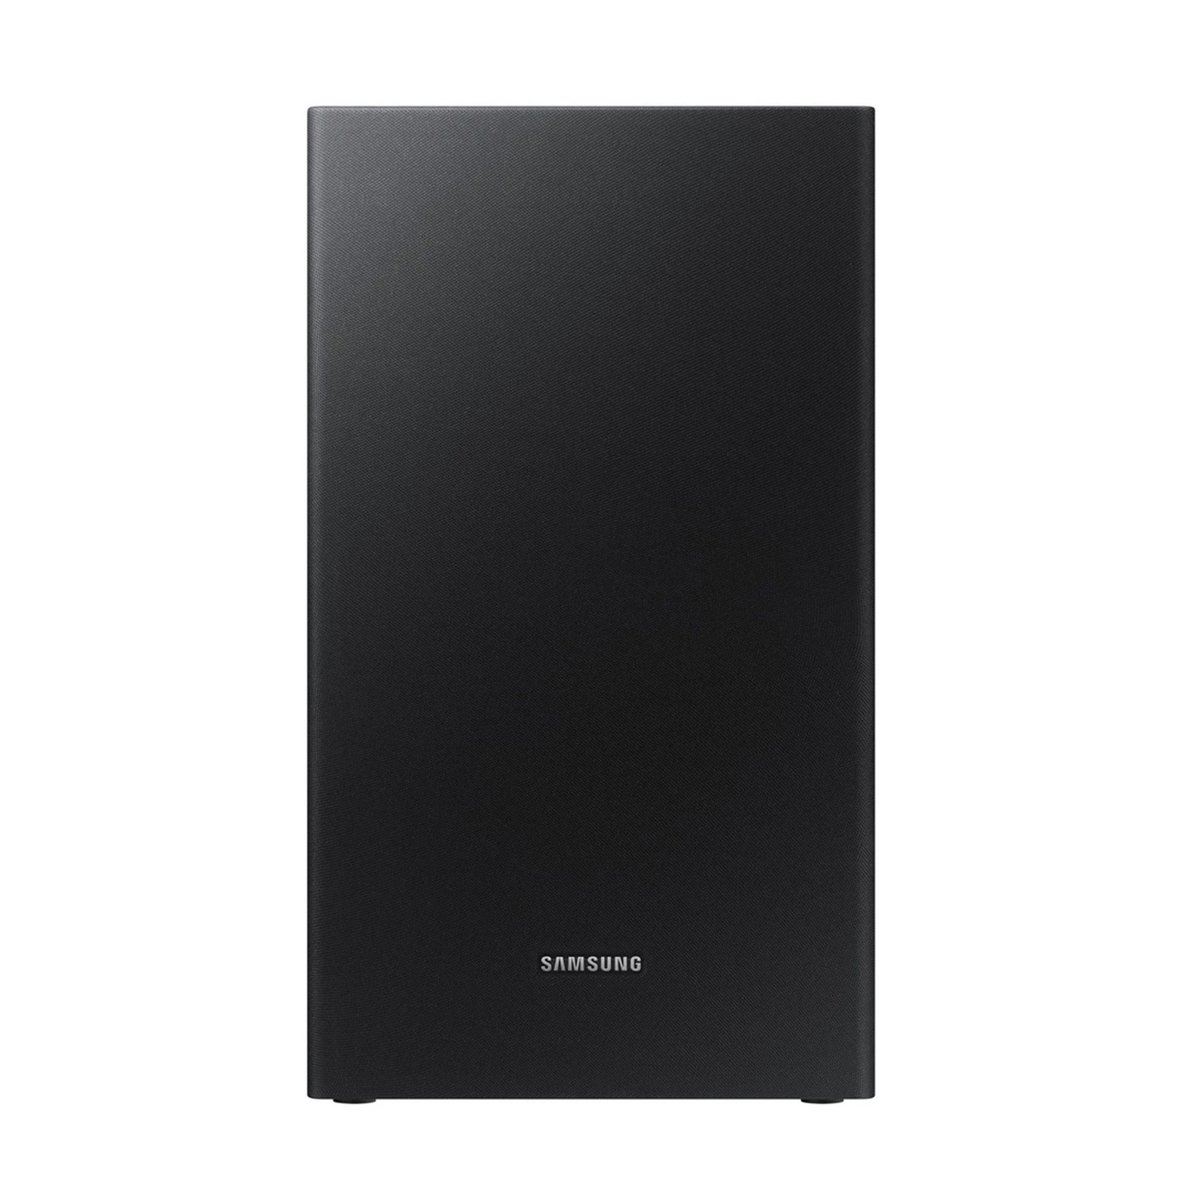 Samsung Soundbar 2.1 Channel HW-R450